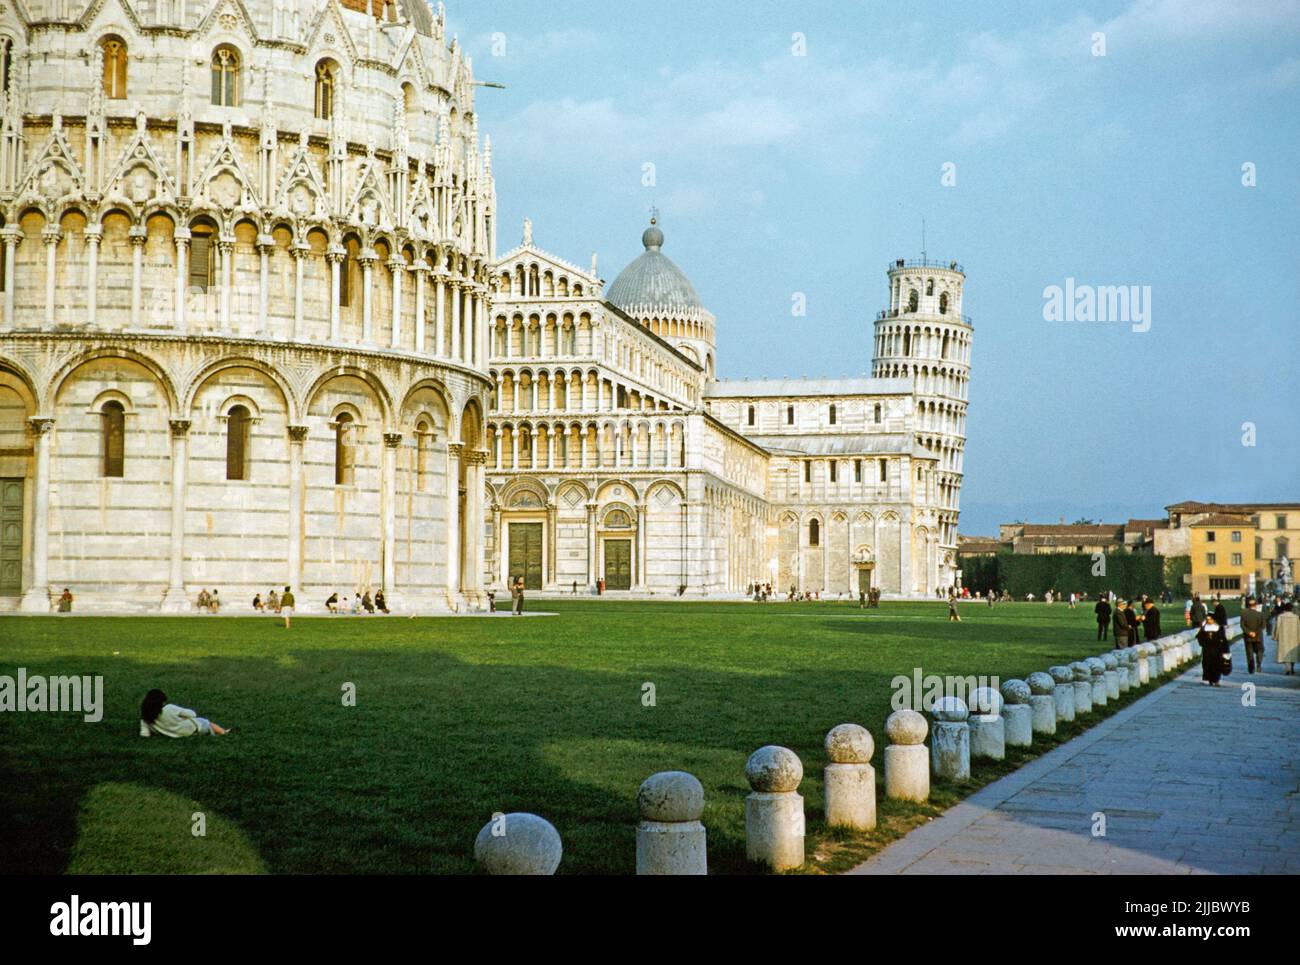 Torre inclinada campanile y la catedral duomo la arquitectura románica, Piazza del Duomo, Pisa, Italia, 1959 Foto de stock